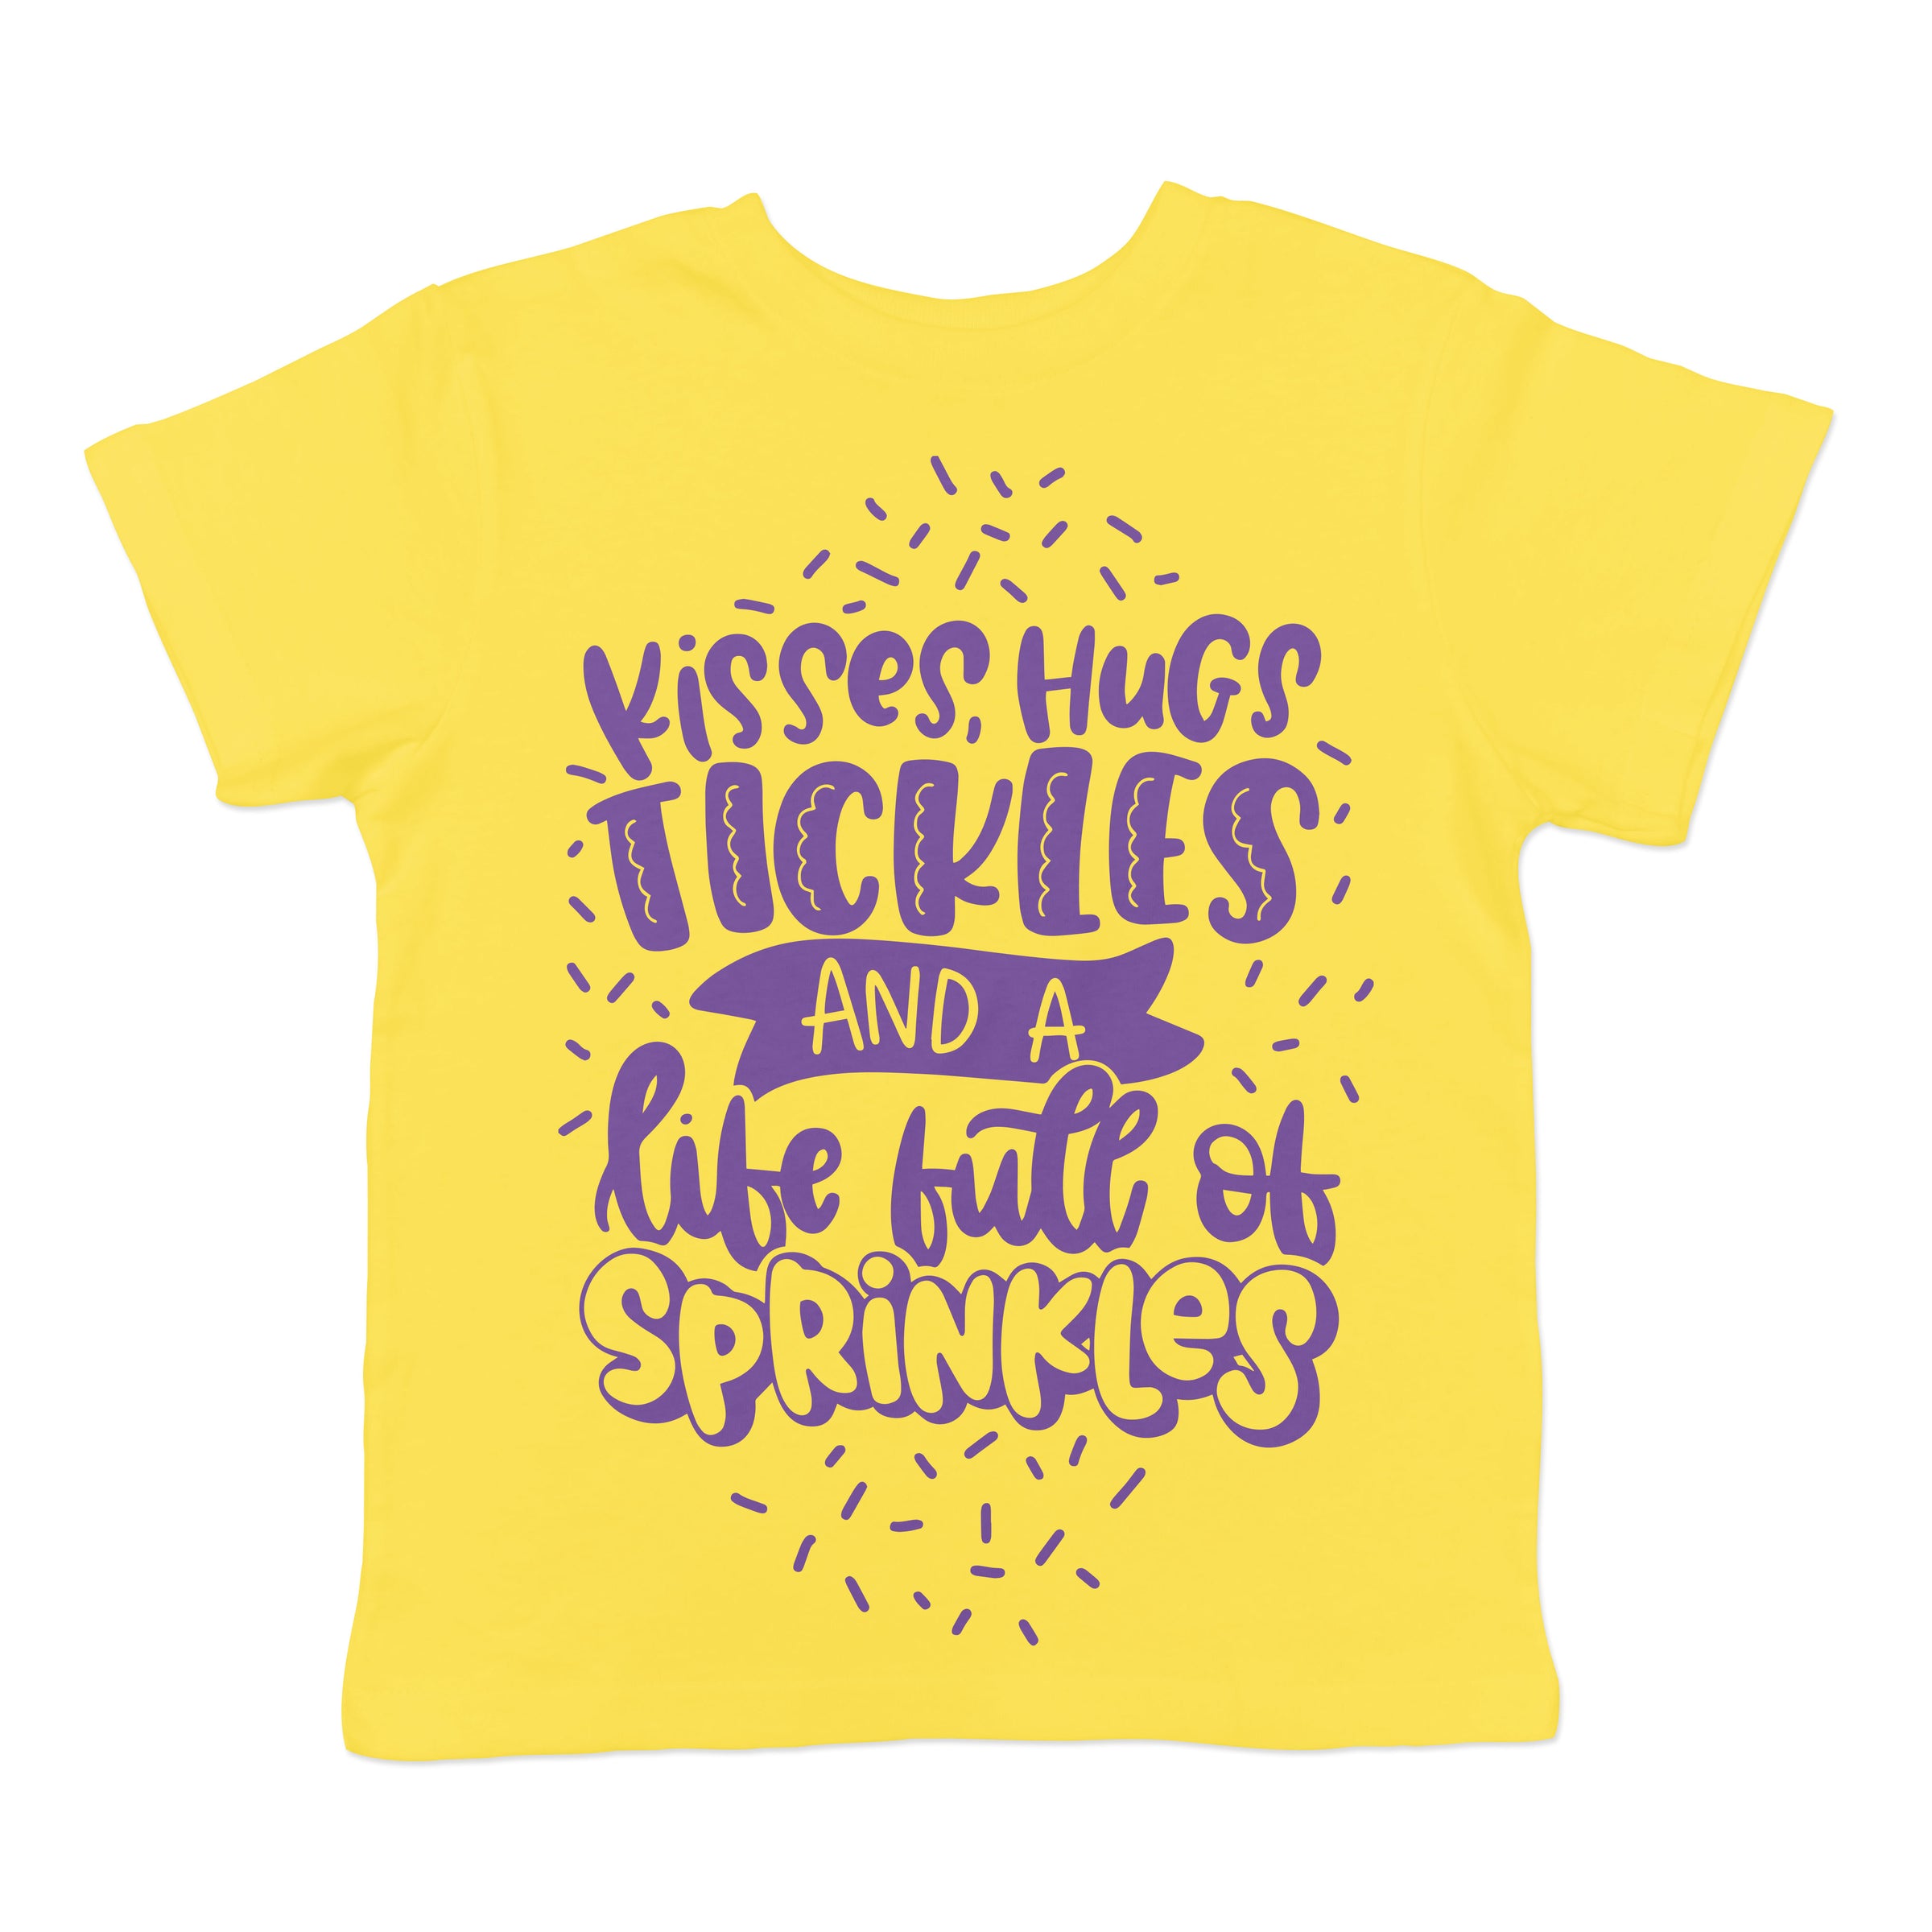 Life Full of Sprinkles - Yellow Kid's Tee - West+Mak